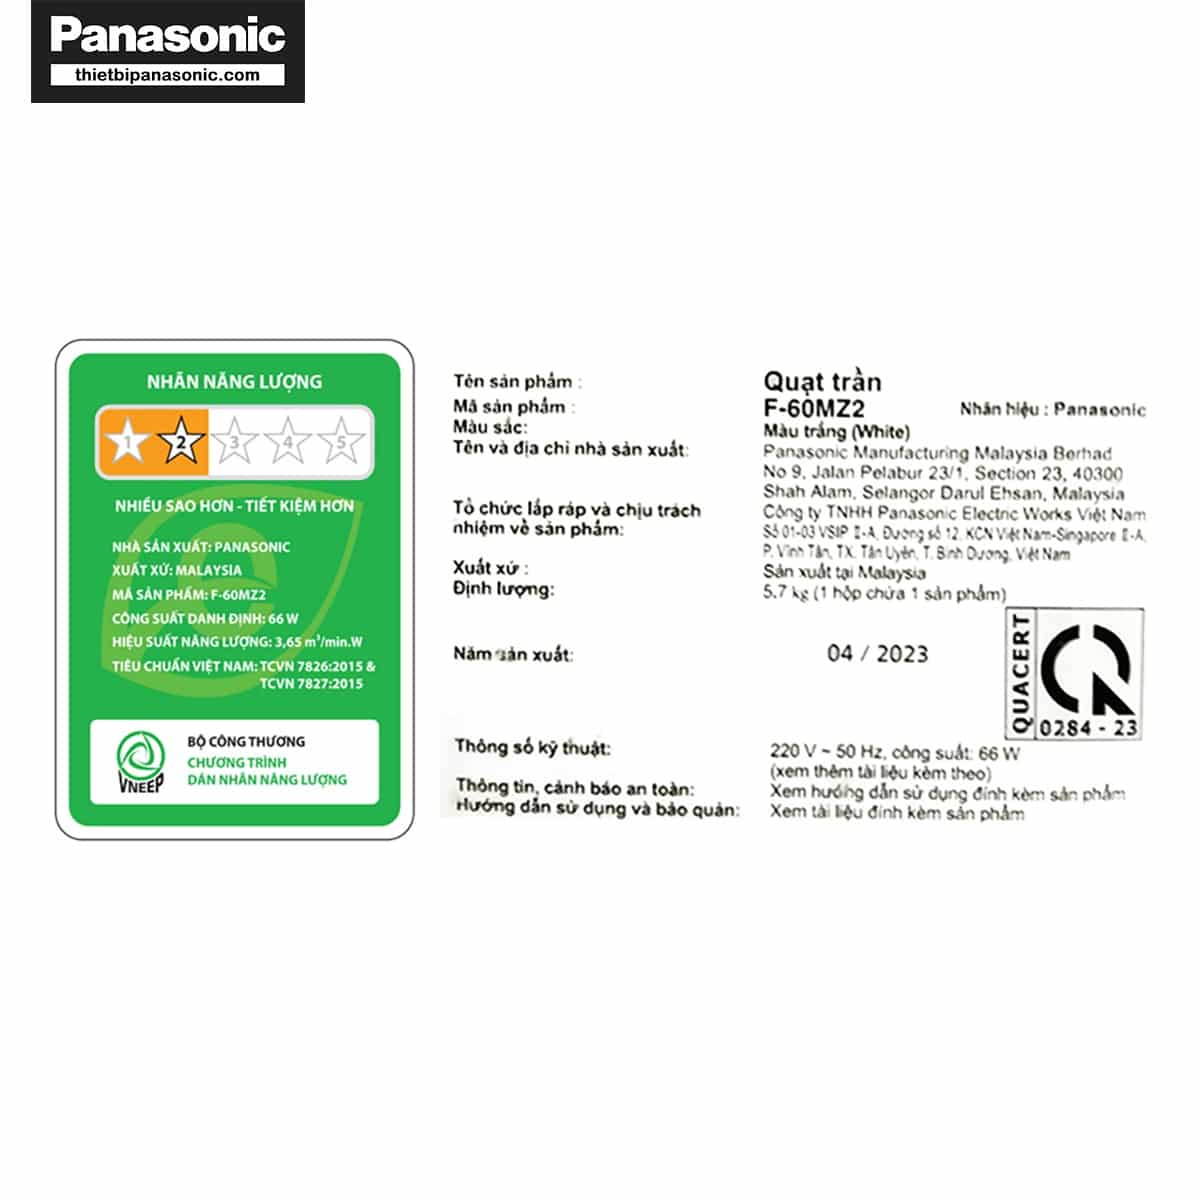 Nhãn năng lượng và thông tin cơ bản của sản phẩm được dán trên thân Quạt trần Panasonic F-60MZ2-L